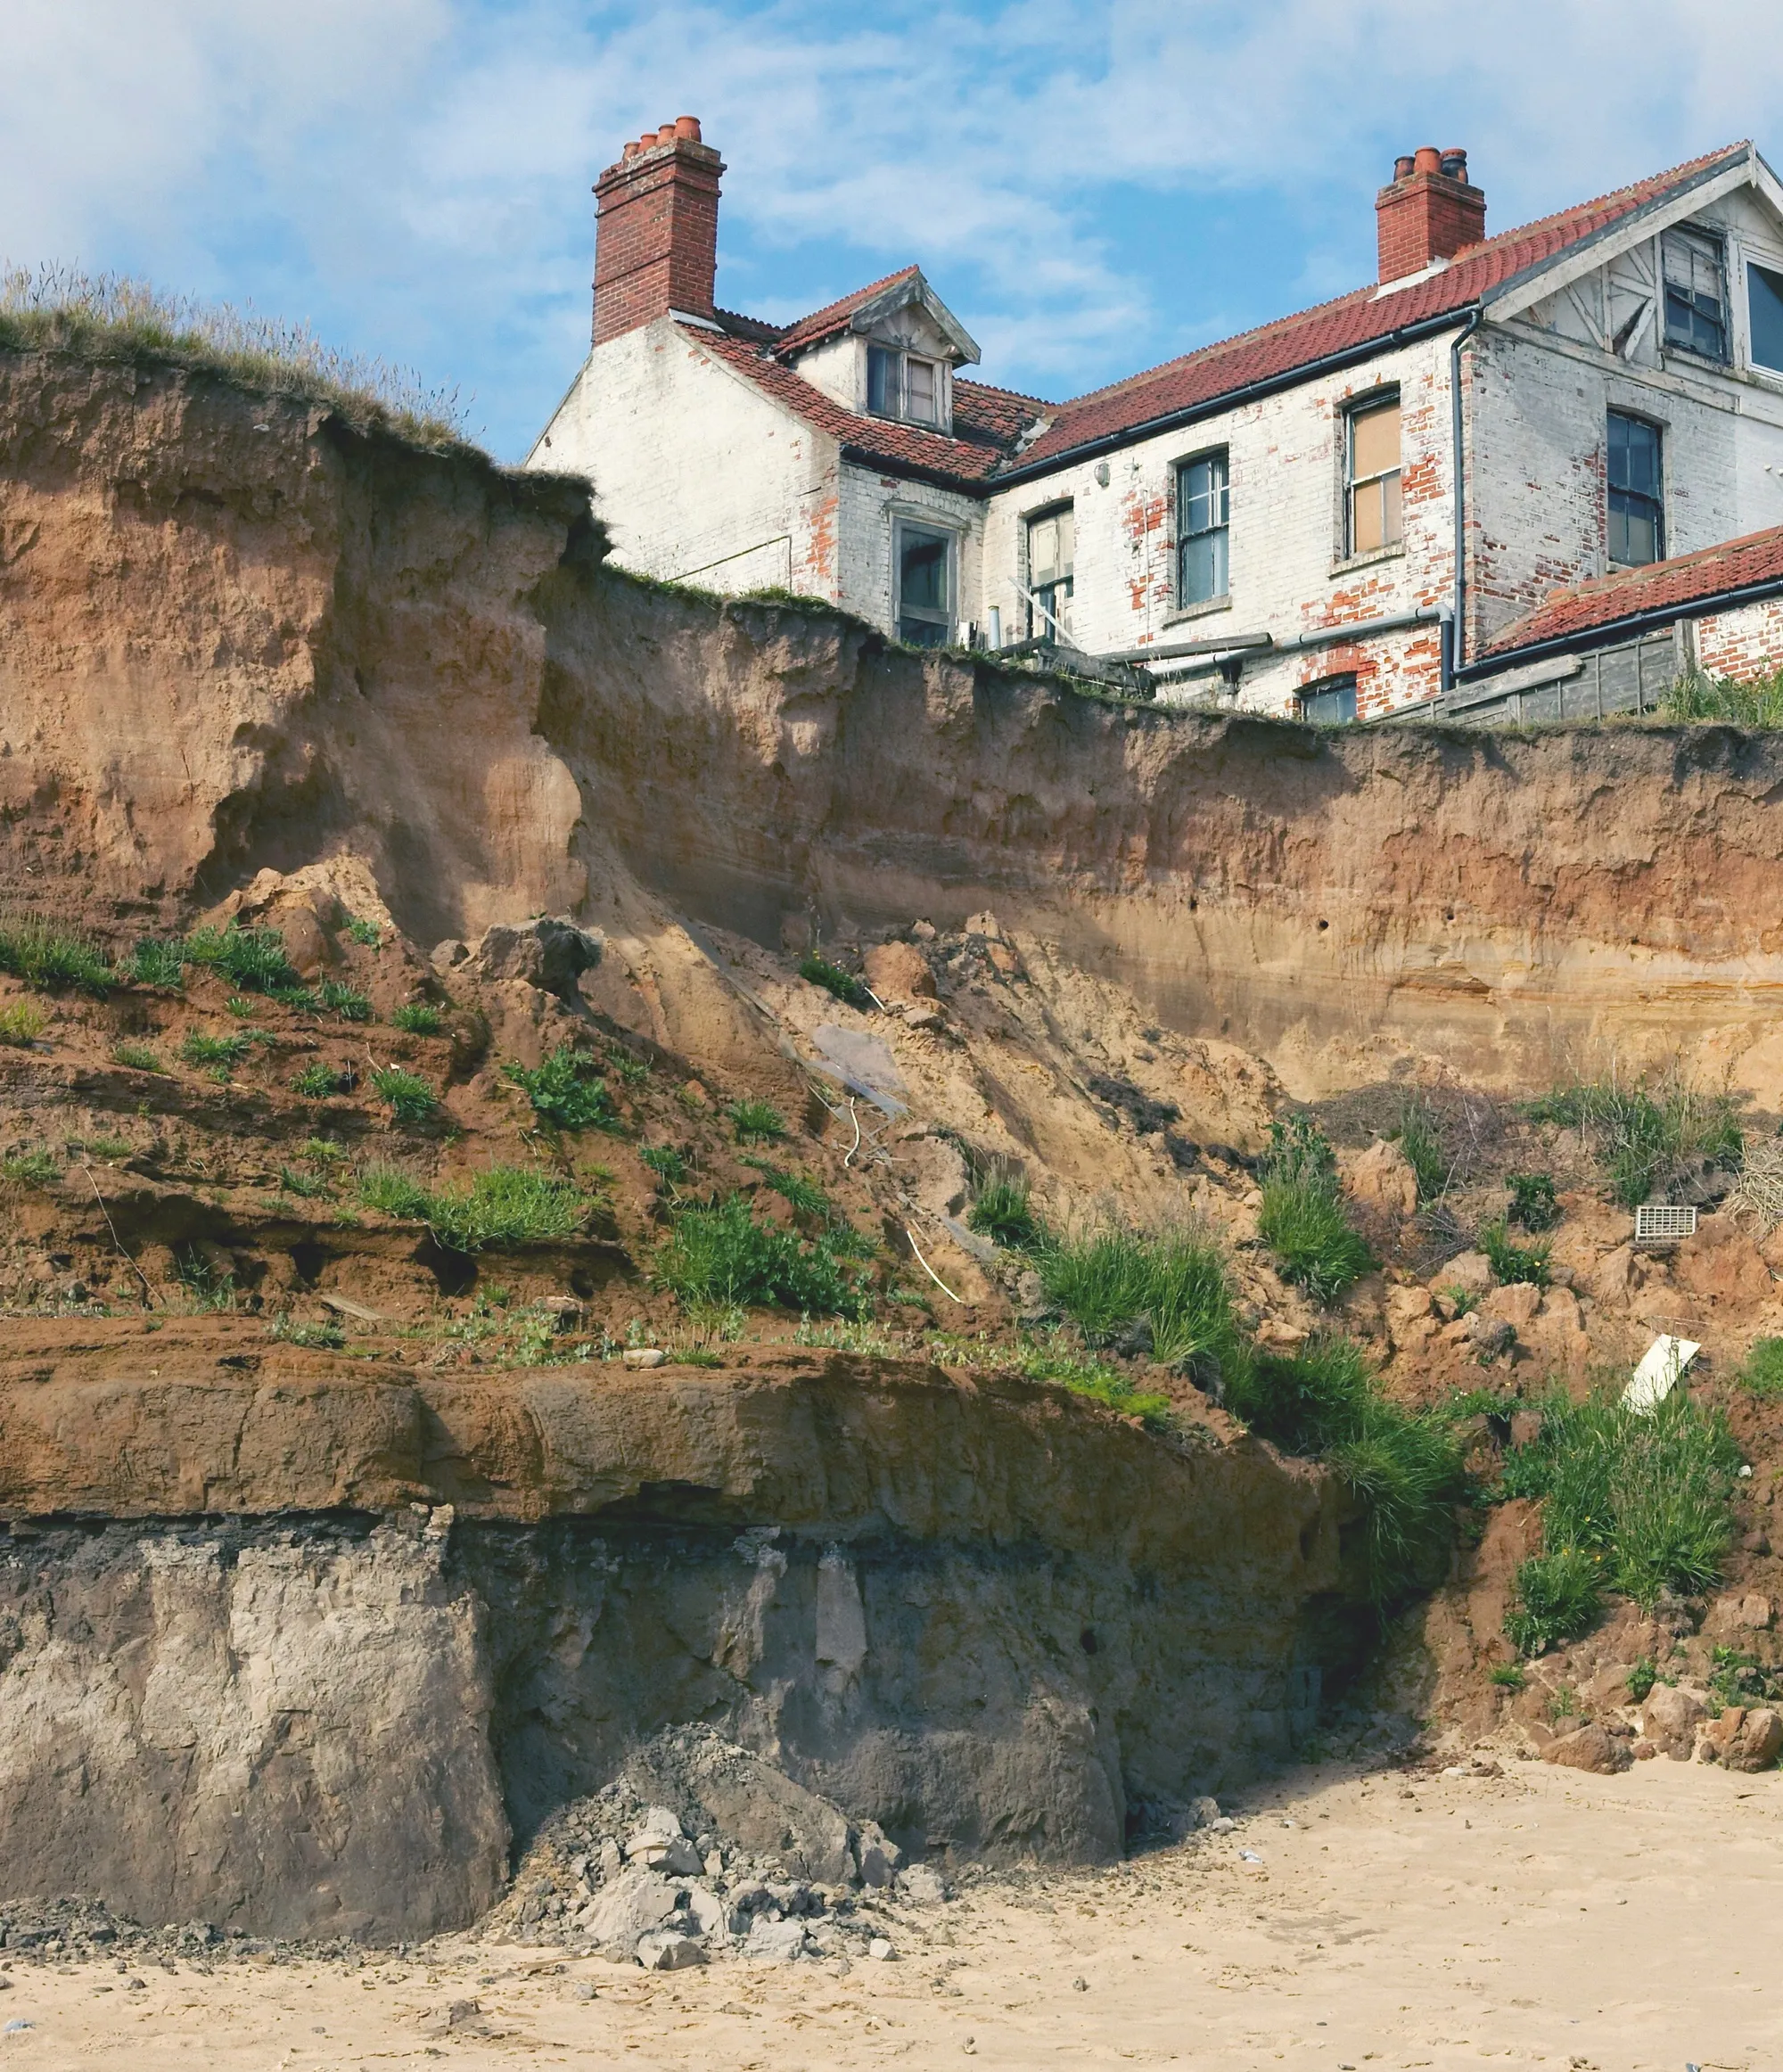 Le recul de la côte de Happisburgh au nord de l'Angleterre : les côtes s'érodent jusqu'à 9 mètres par an, ce qui menace les constructions les plus proches.